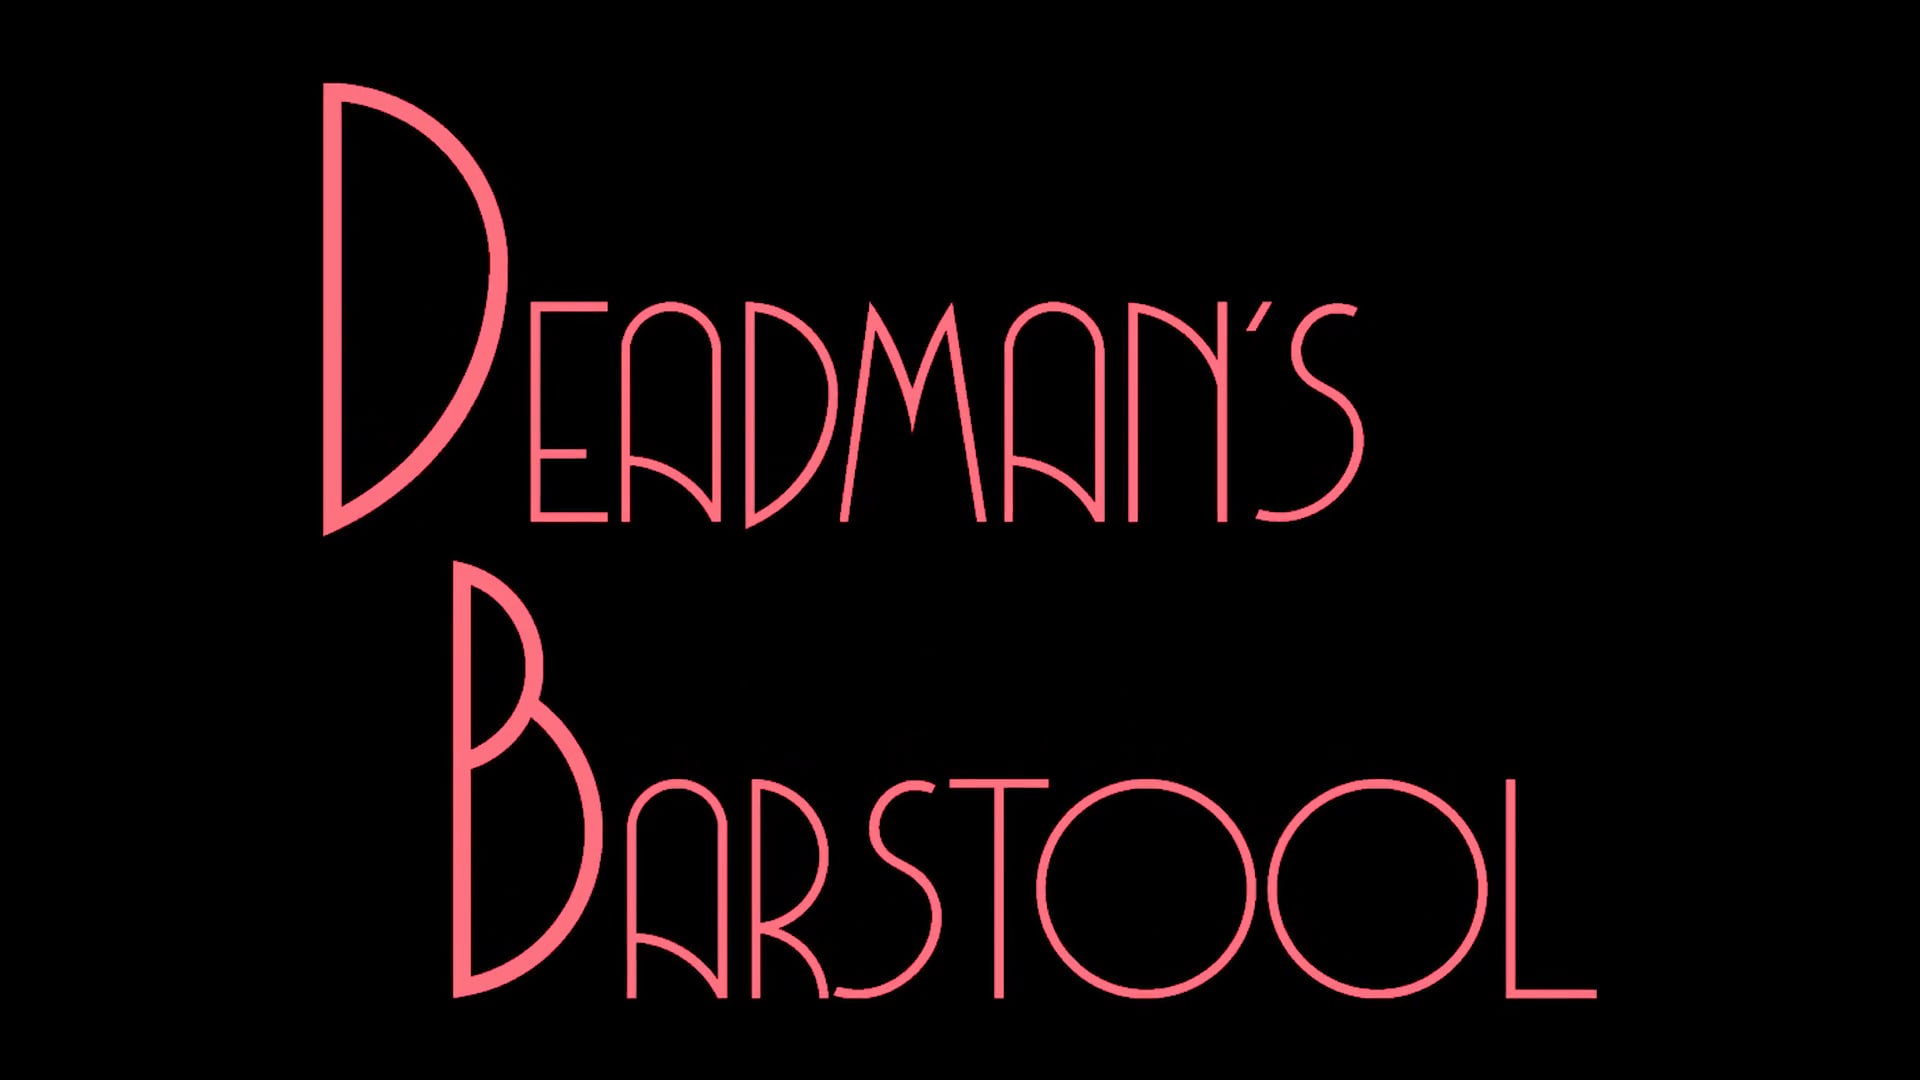 Deadman's Barstool Trailer (1 min)